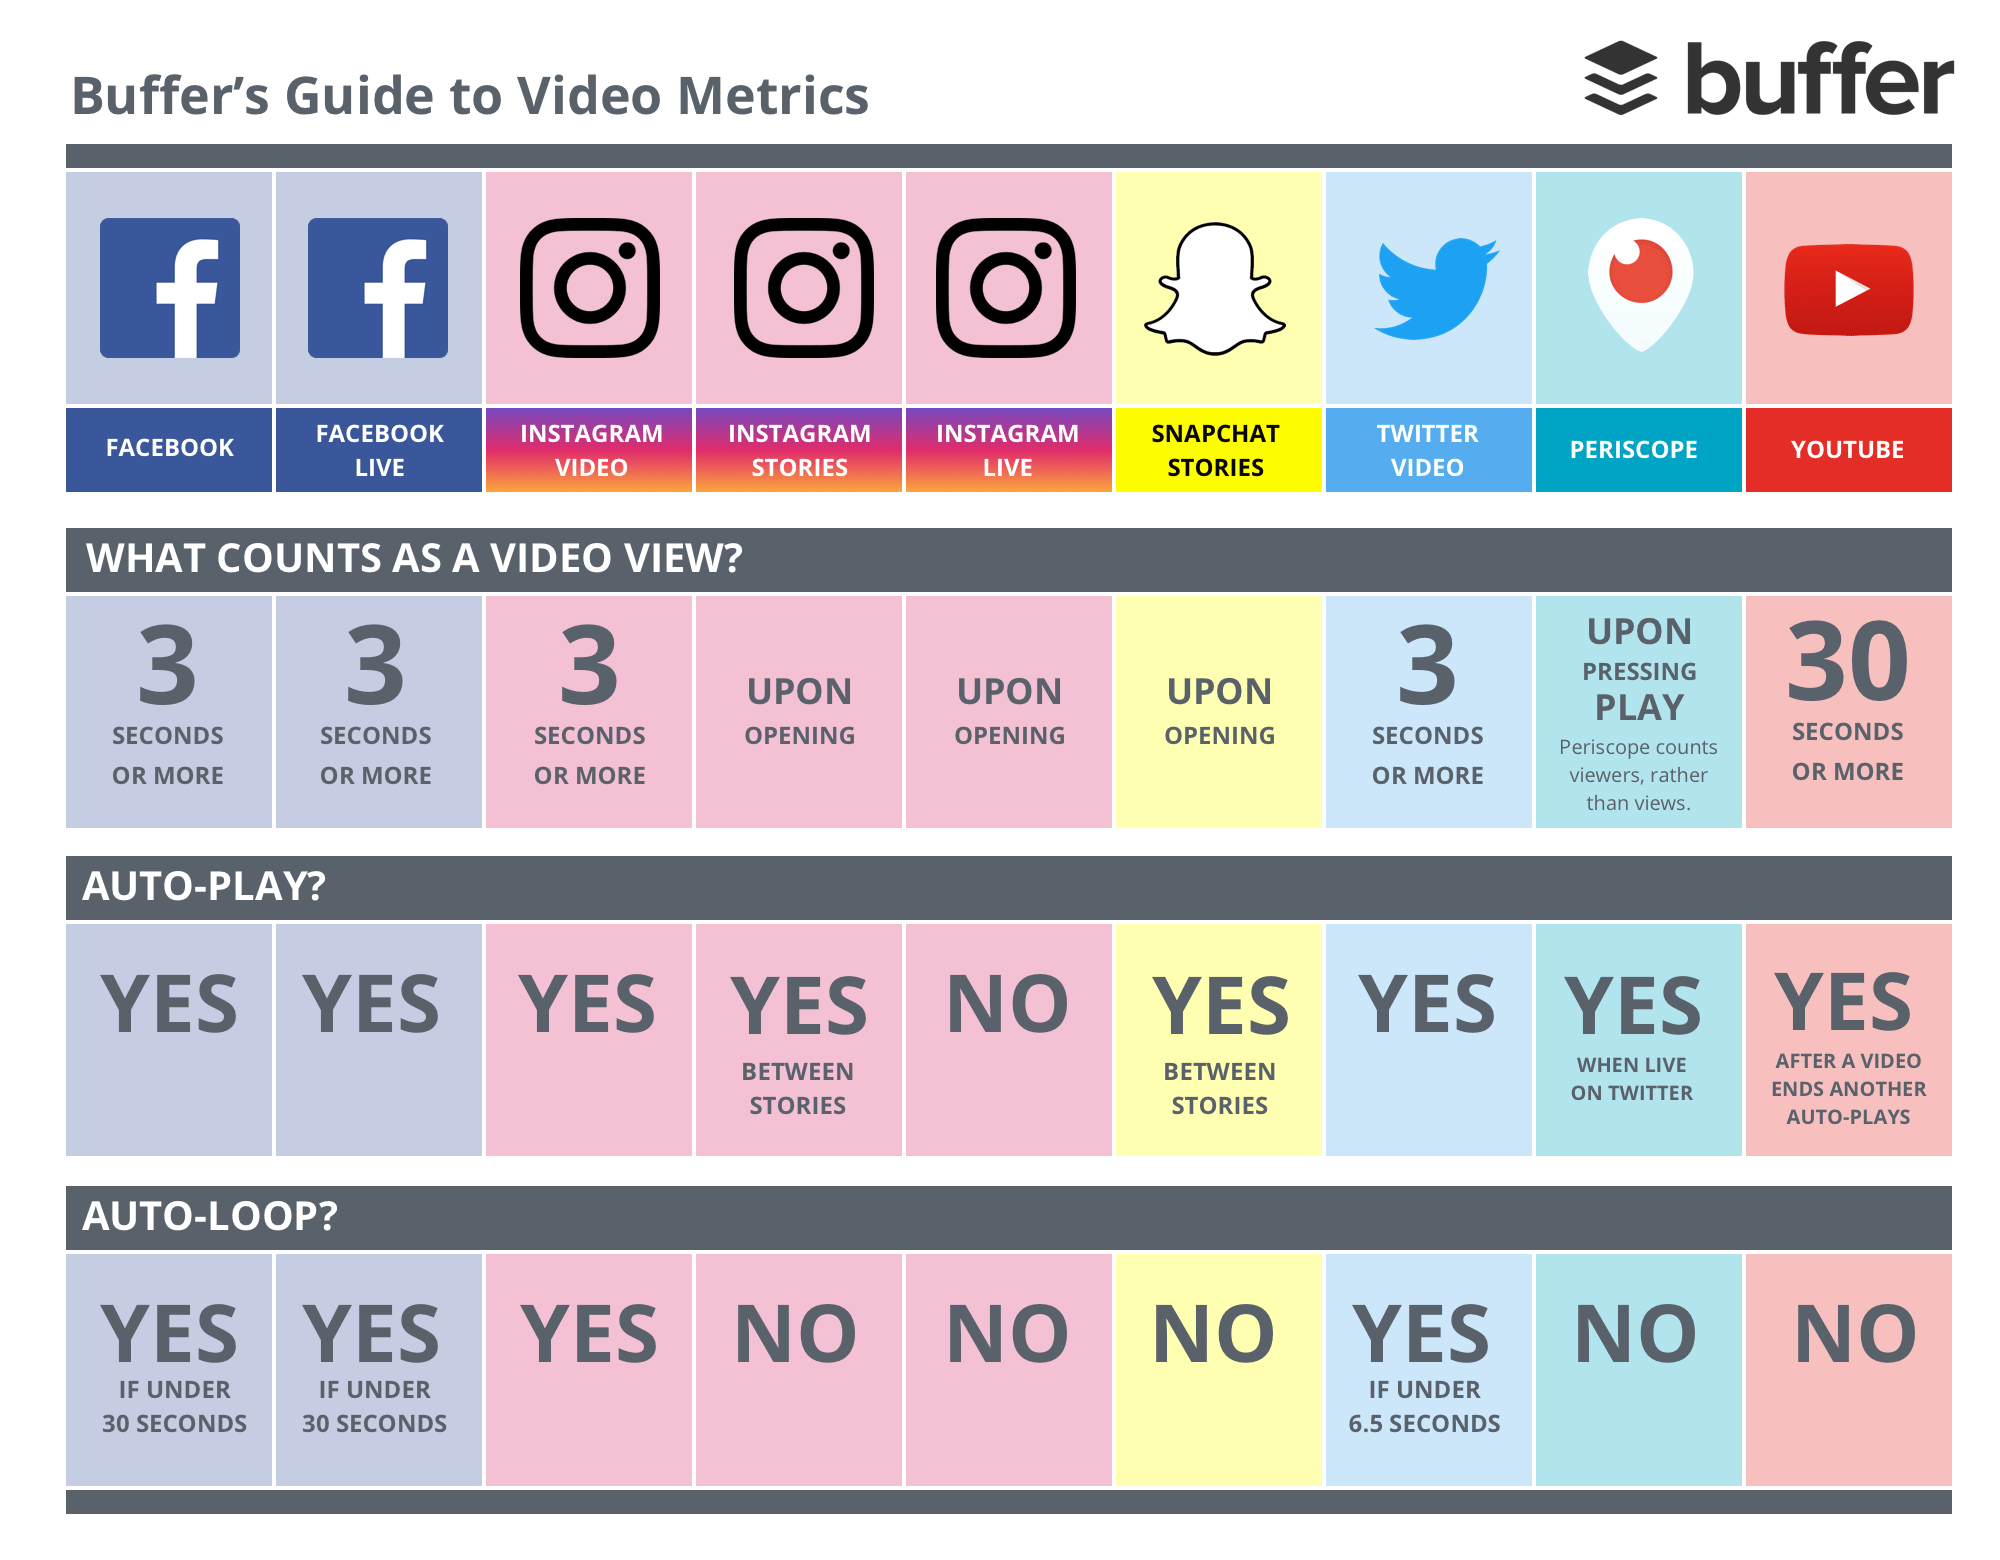 Video metrics infographic